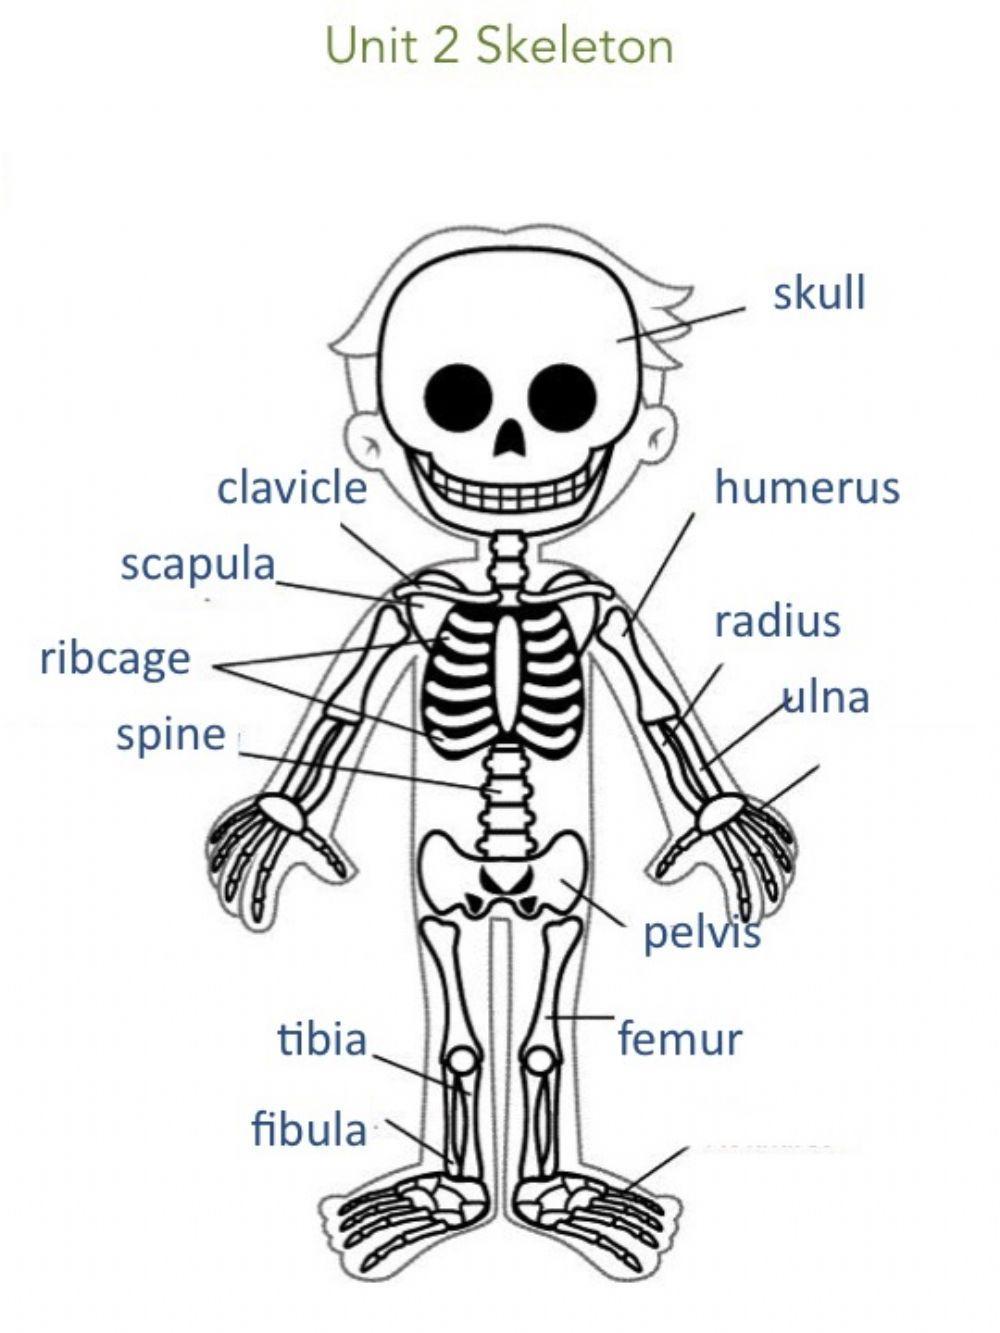 Unit 2 Skeleton Information